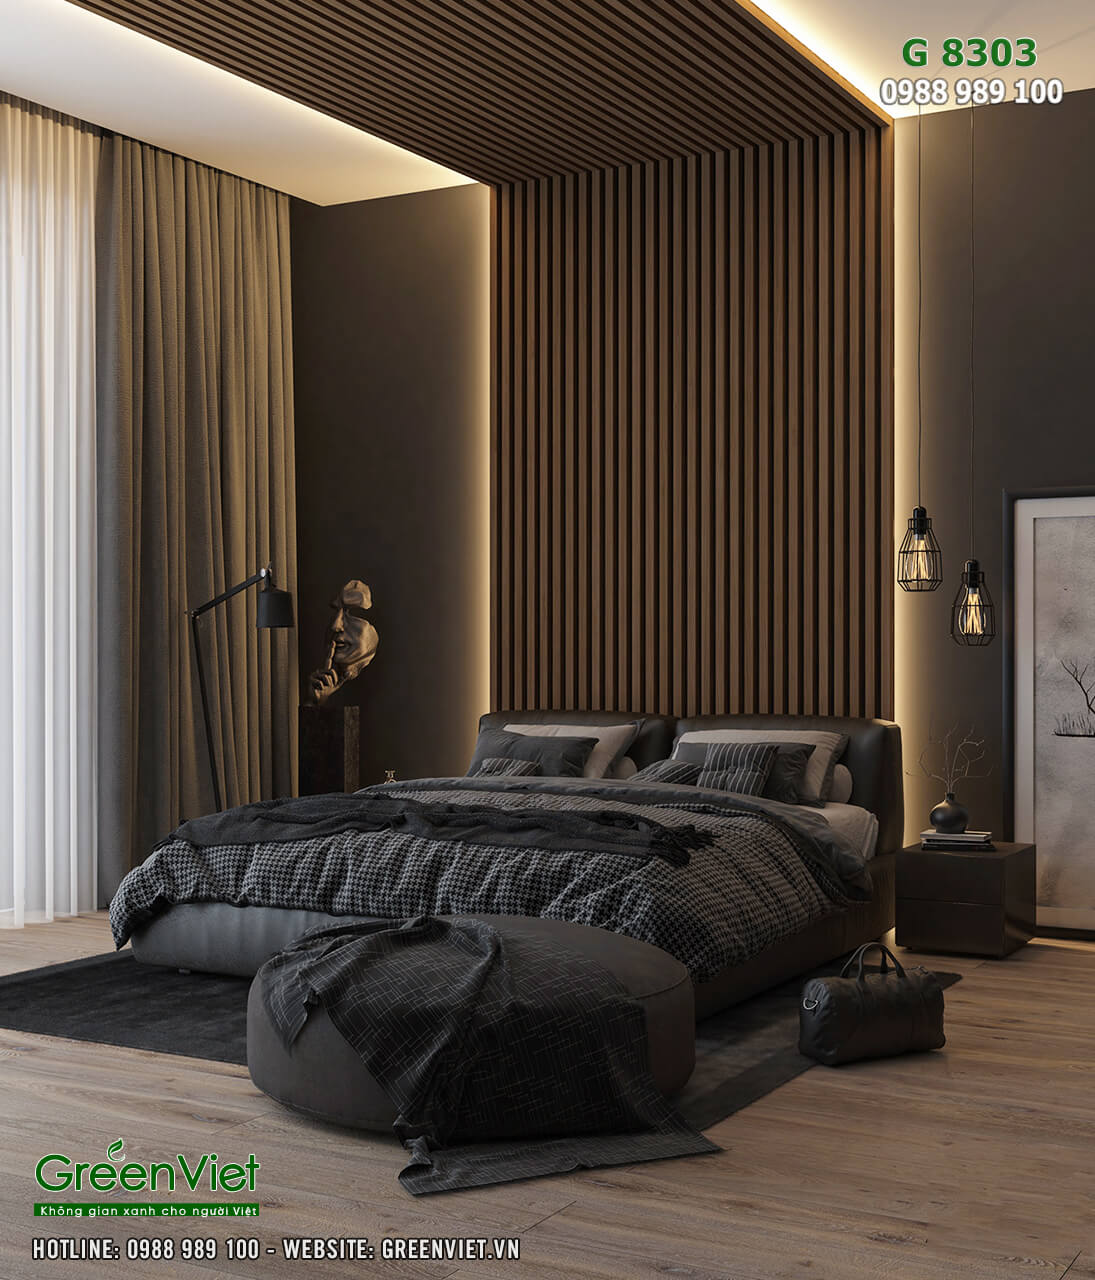 Hình ảnh: Bộ giường ngủ cao cấp với các món đồ nhập khẩu cao câps